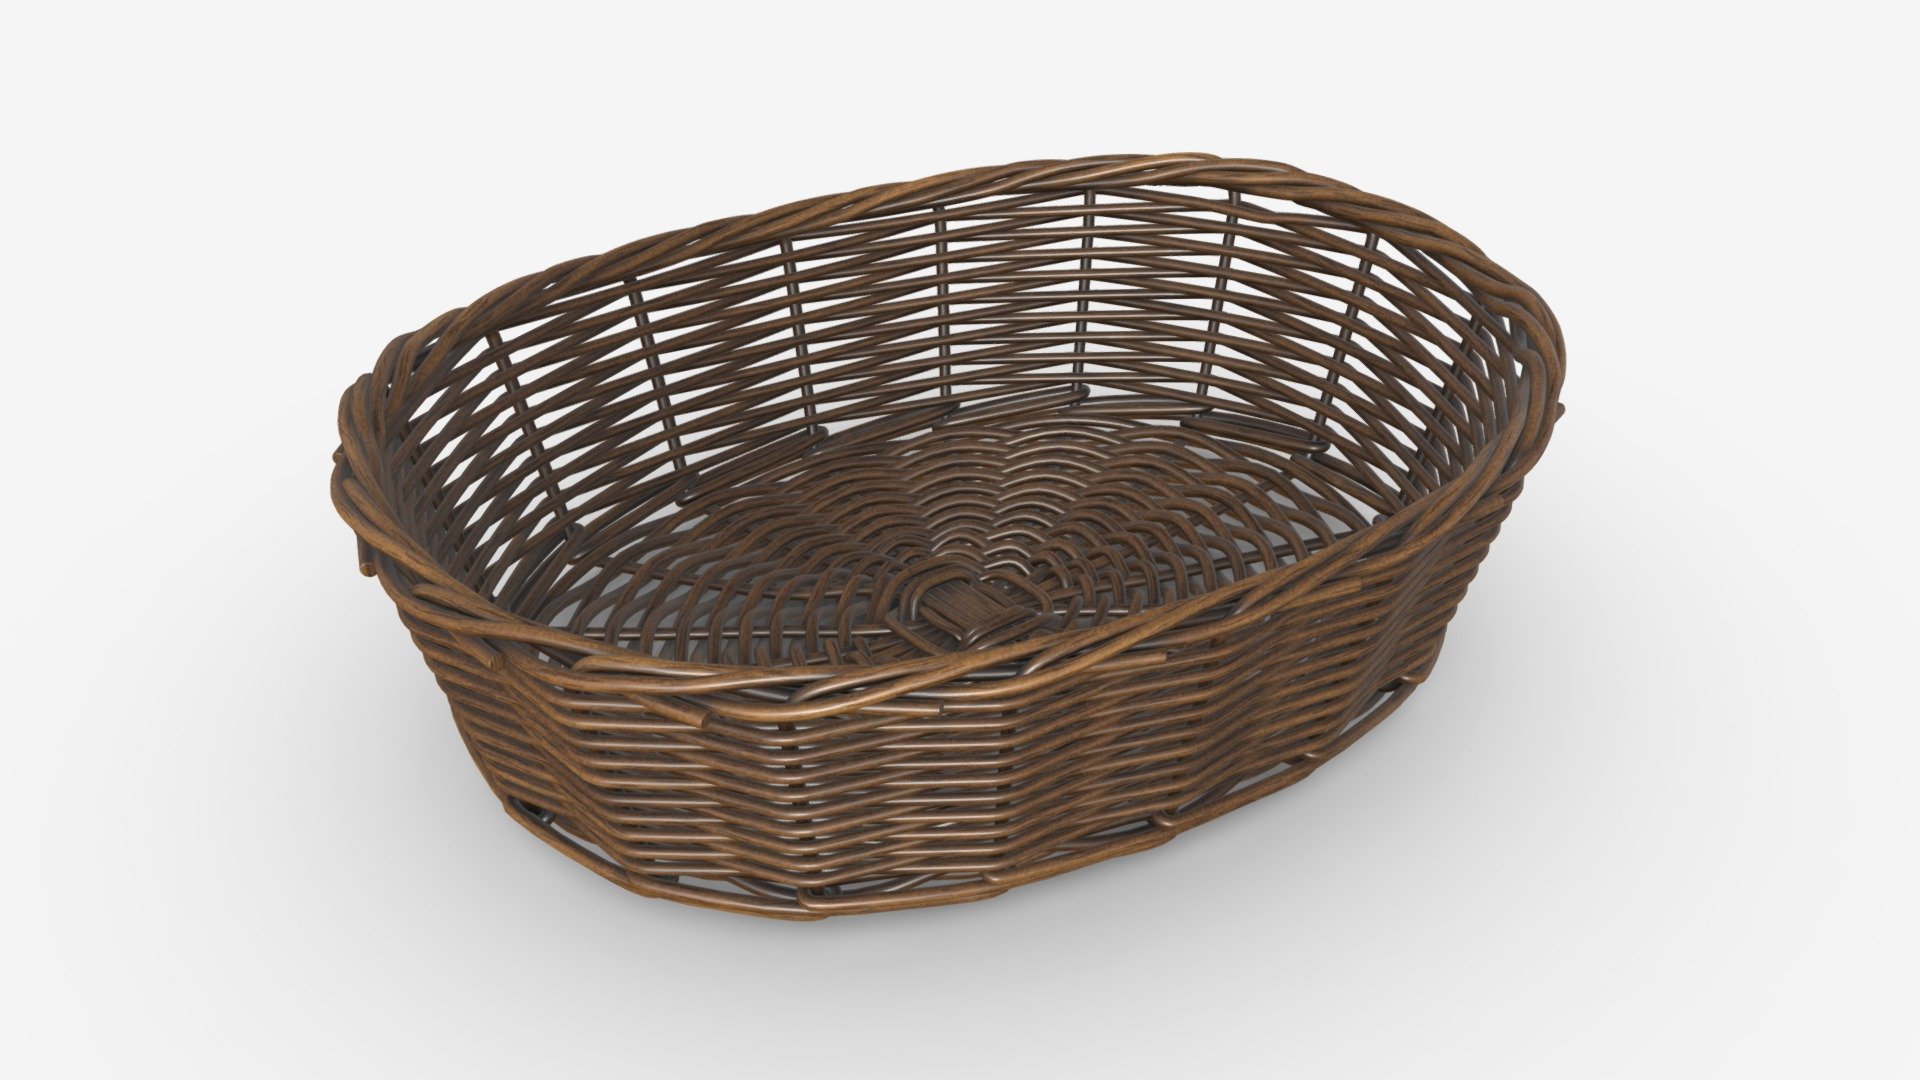 Oval wicker basket brown